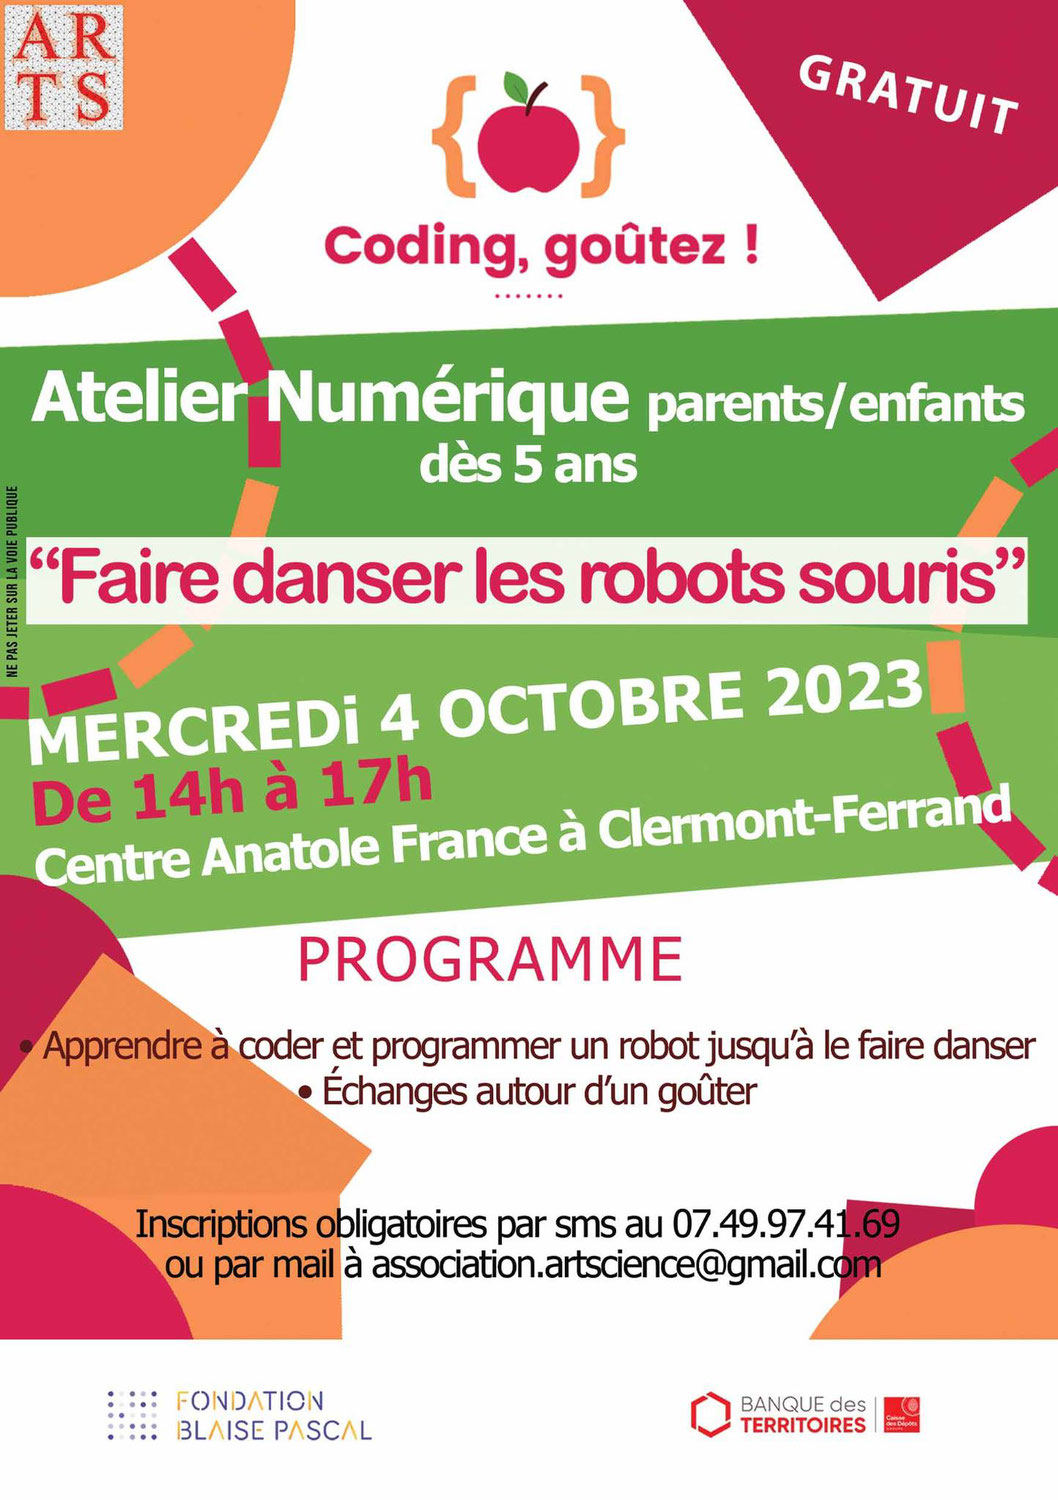 "Coding, goutez !", mercredi 4 octobre, au Centre Anatole France à Clermont-Ferrand